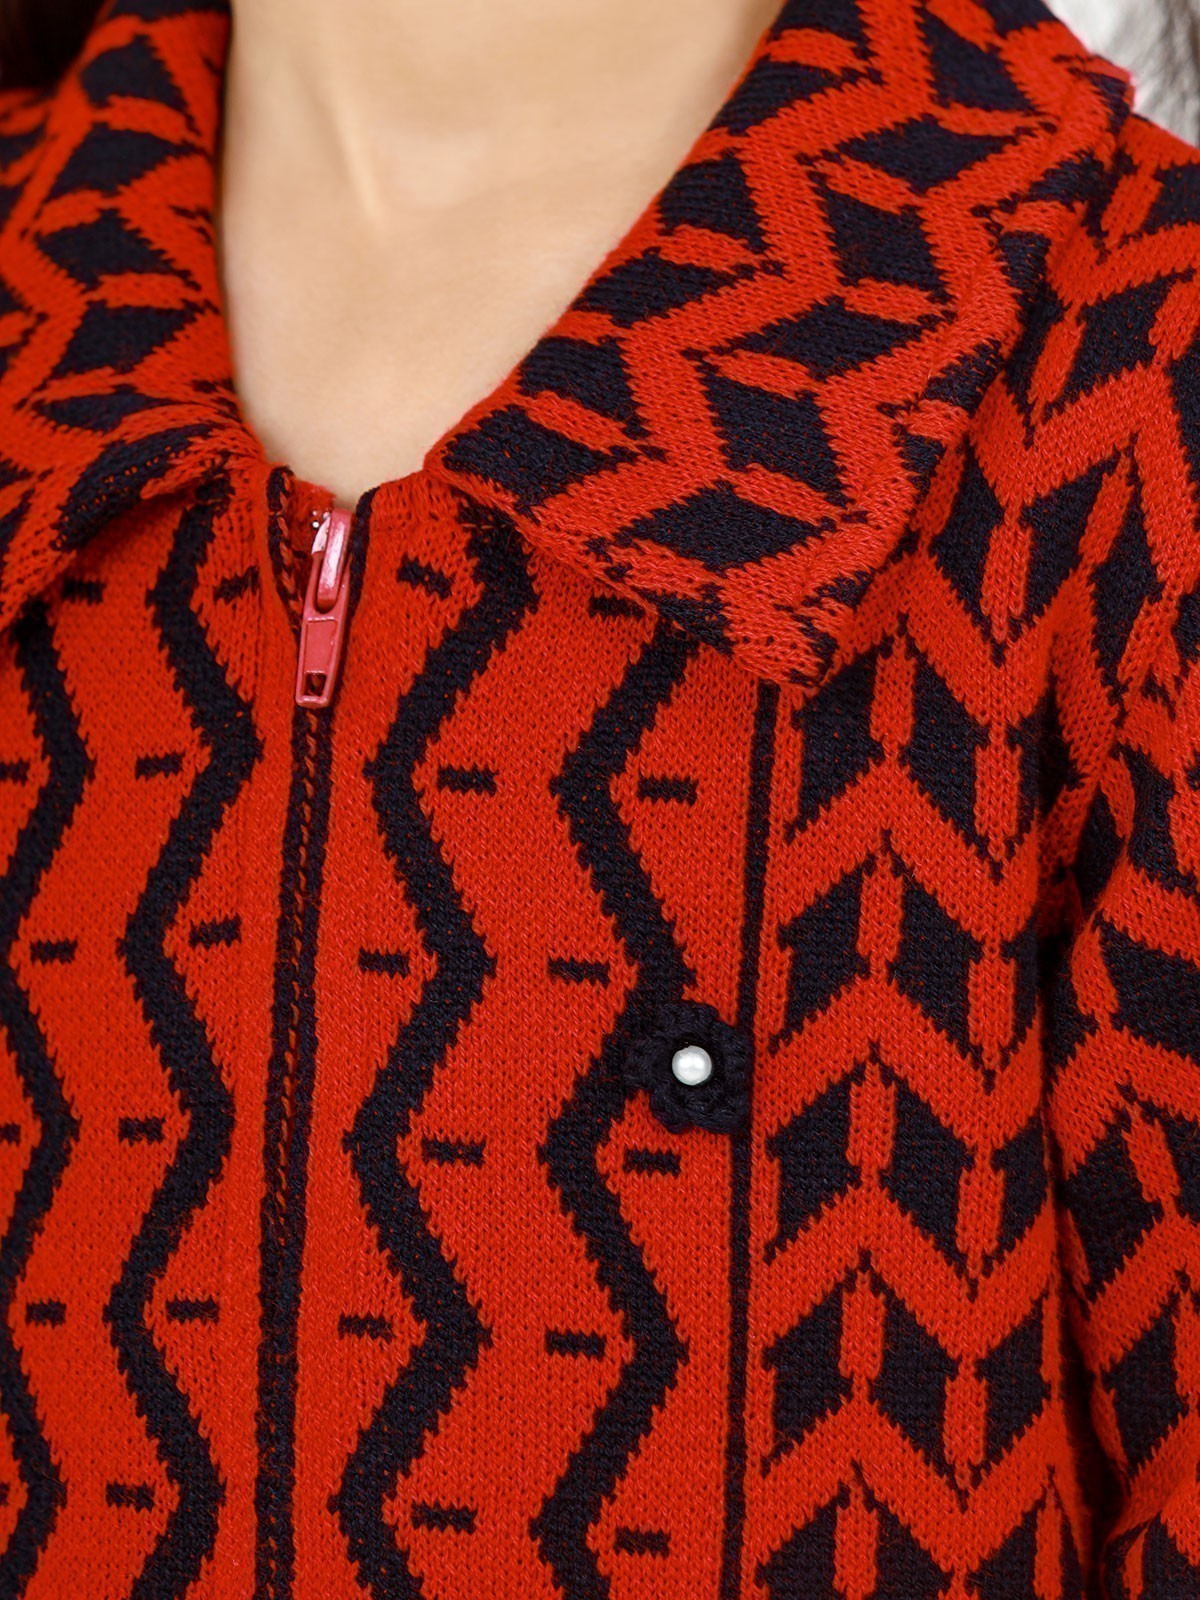 edenrobe Girl's Red Sweater Frock - EGTSF22-004 – edenrobe Pakistan